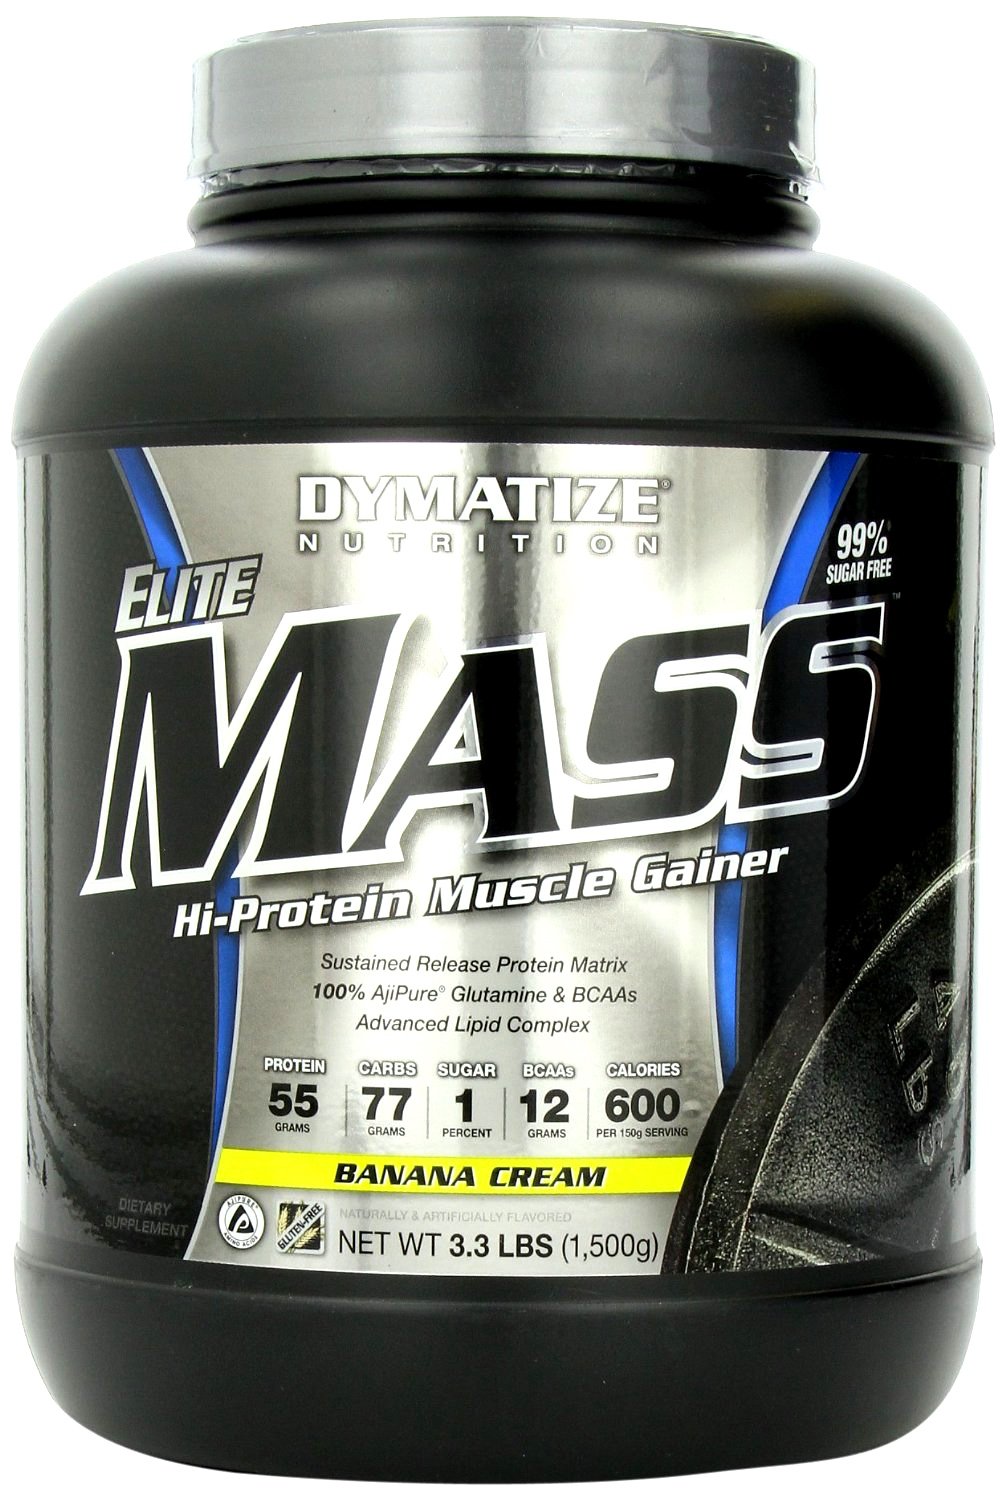 Elite Mass Gainer, 1500 g, Dymatize Nutrition. Ganadores. Mass Gain Energy & Endurance recuperación 